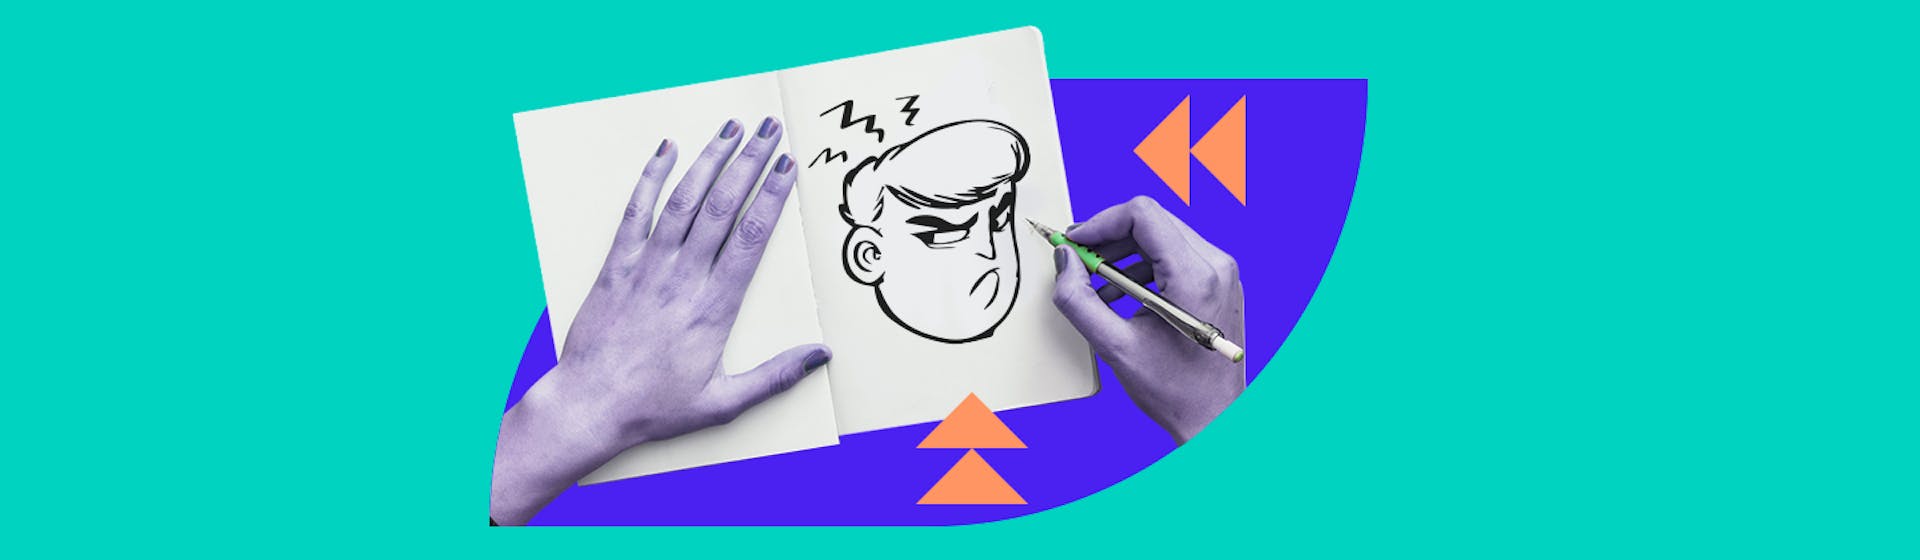 Cómo dibujar una cara enojada paso a paso sin enfadarse en el intento